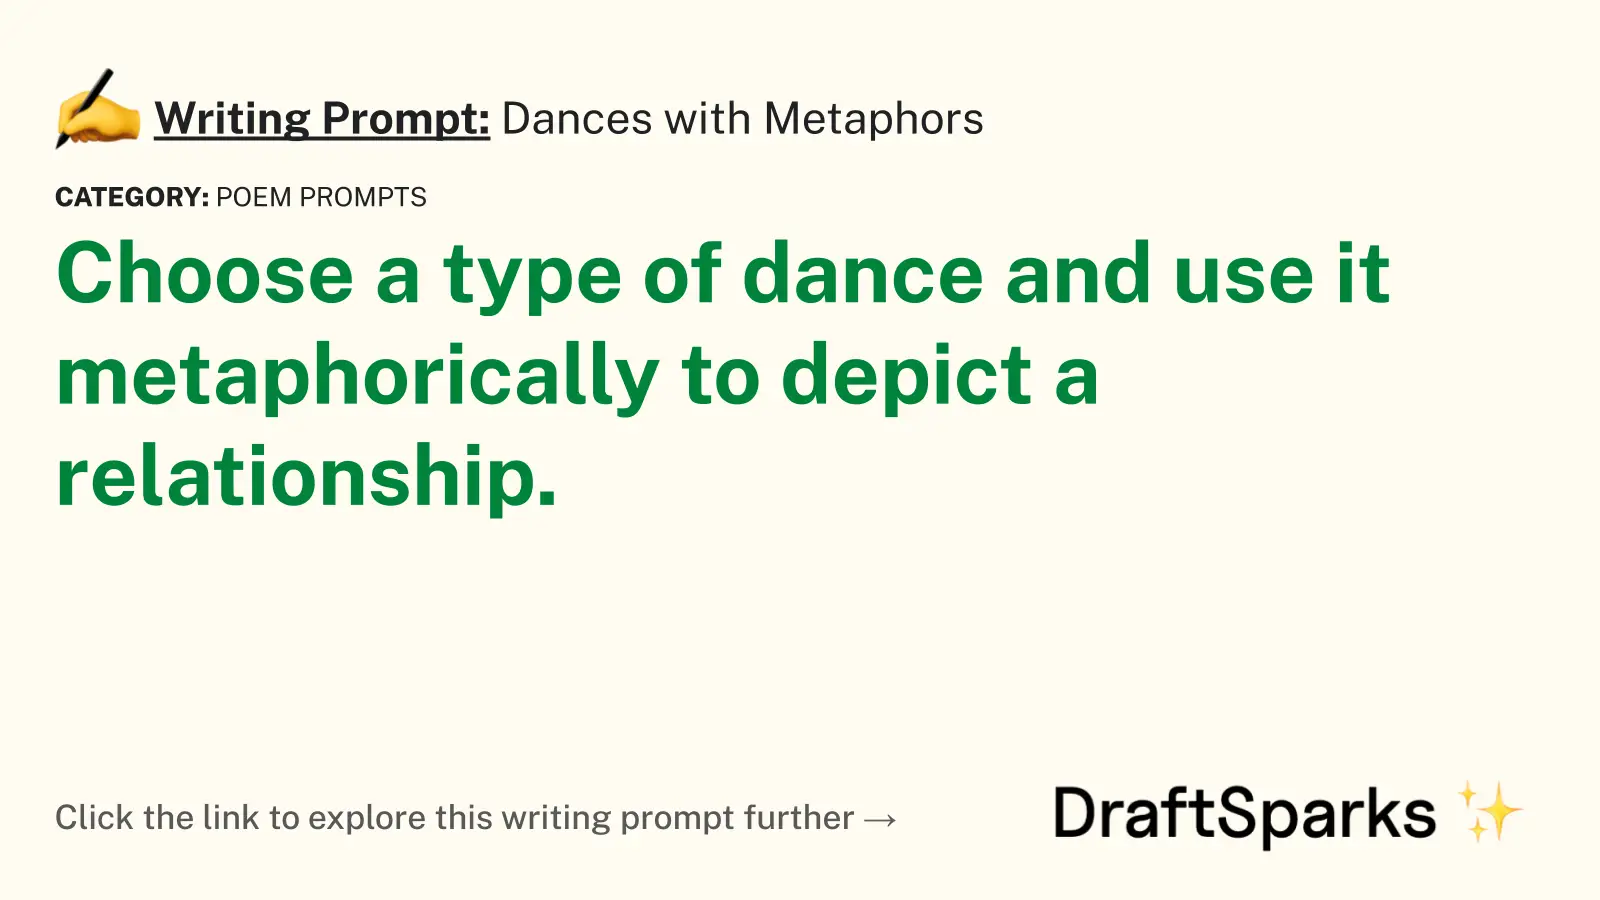 Dances with Metaphors